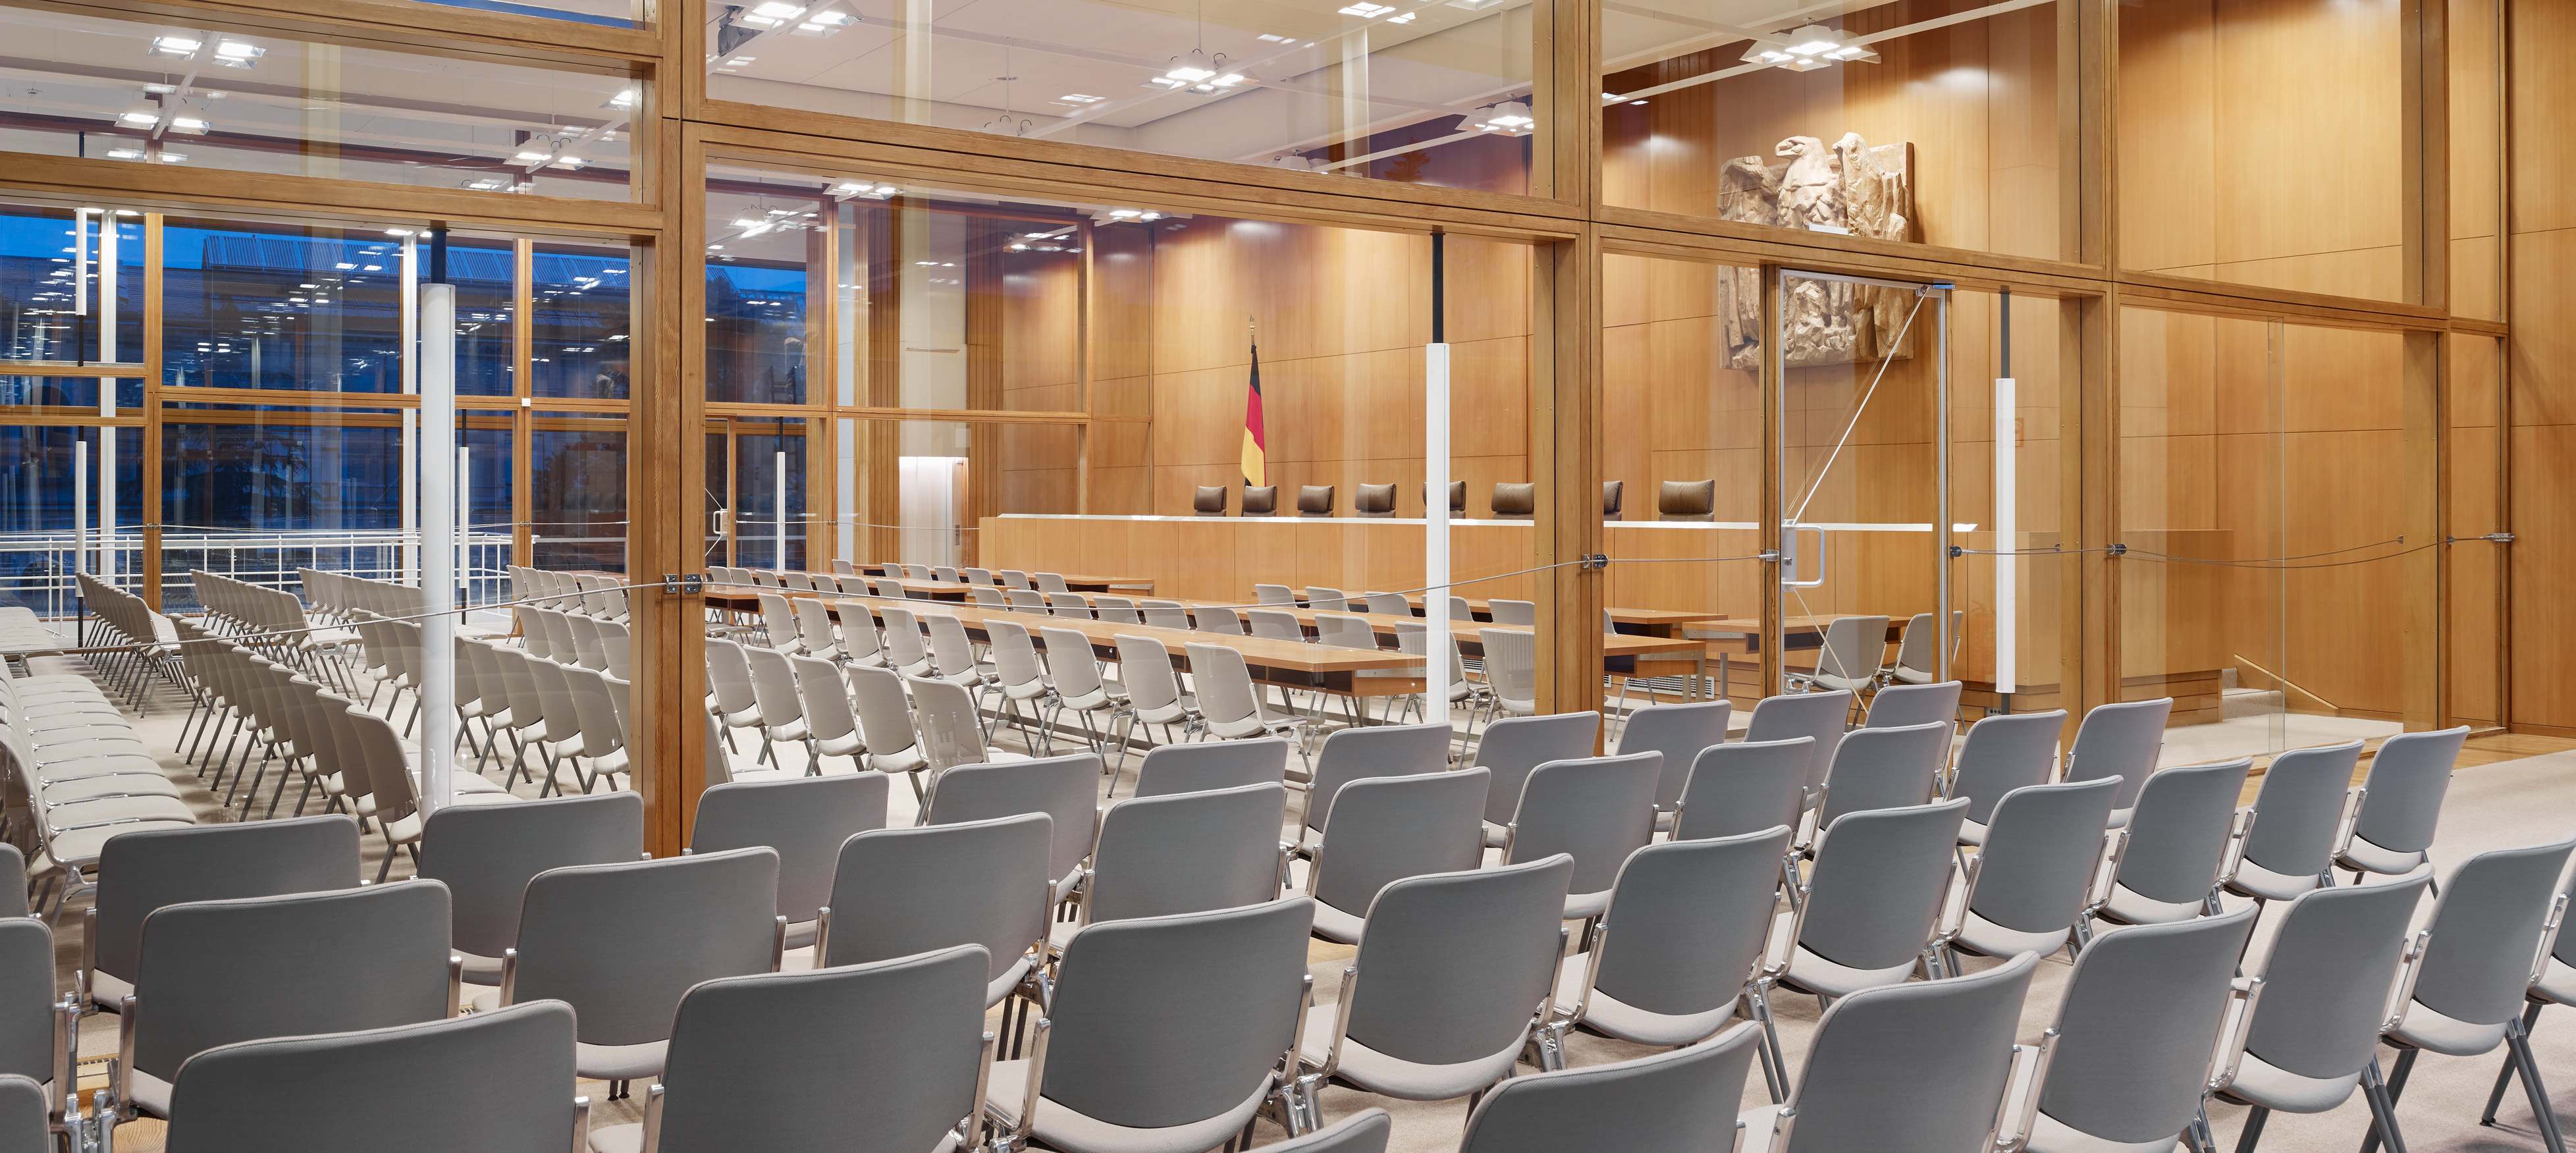 Innenaufnahme eines Verhandlungssaals im Bundesverfassungsgericht mit vielen Sitzreihen mit grauen Stühlen